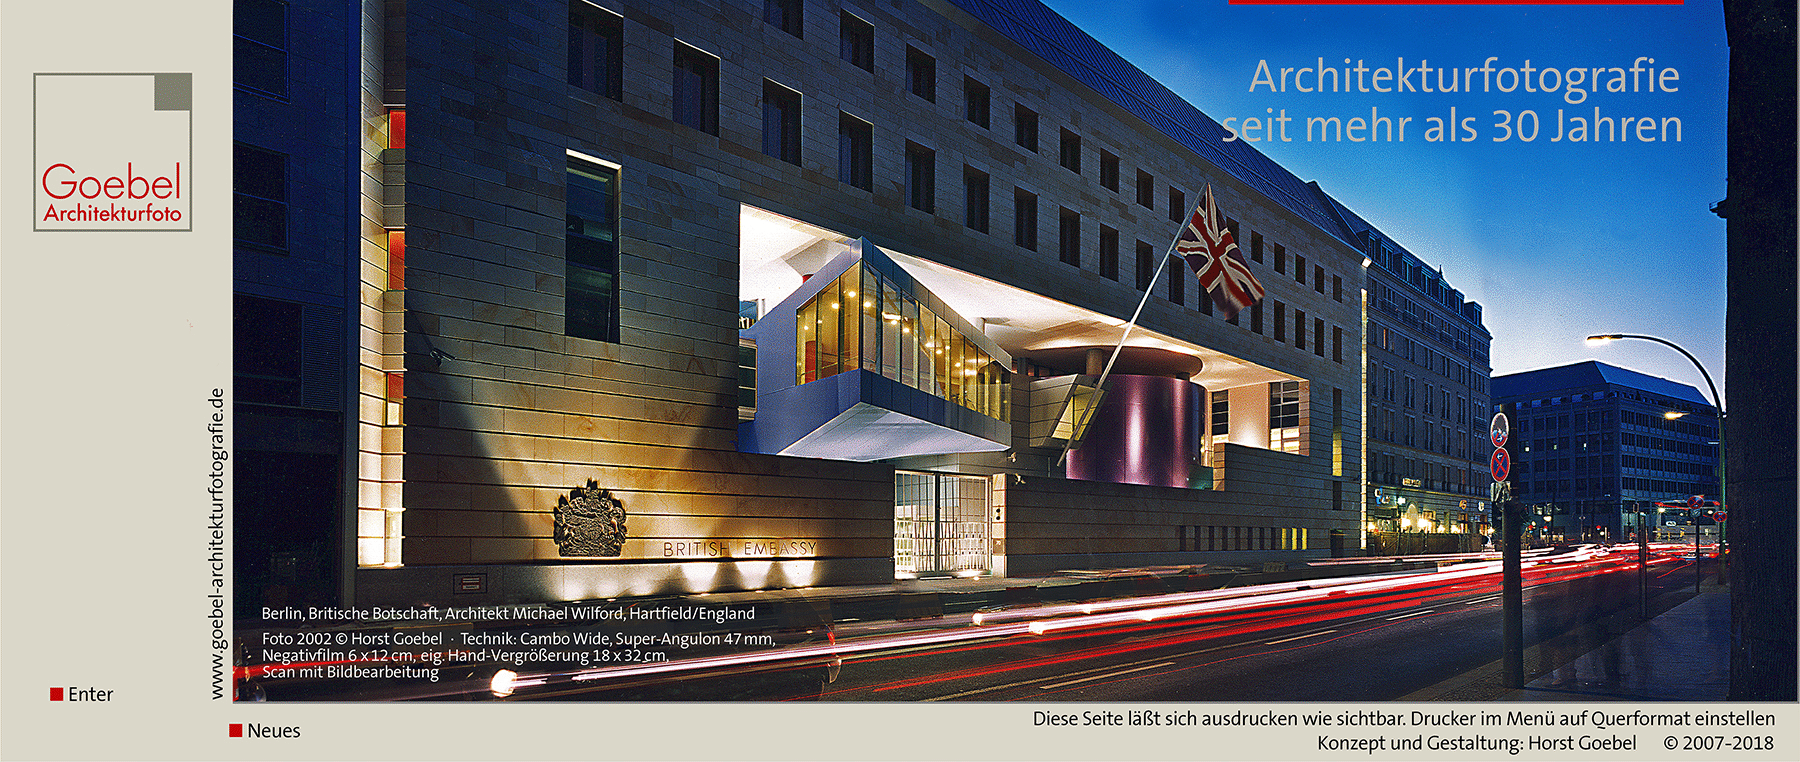 Architekturfotograf Berlin Britische Botschaft Goebel